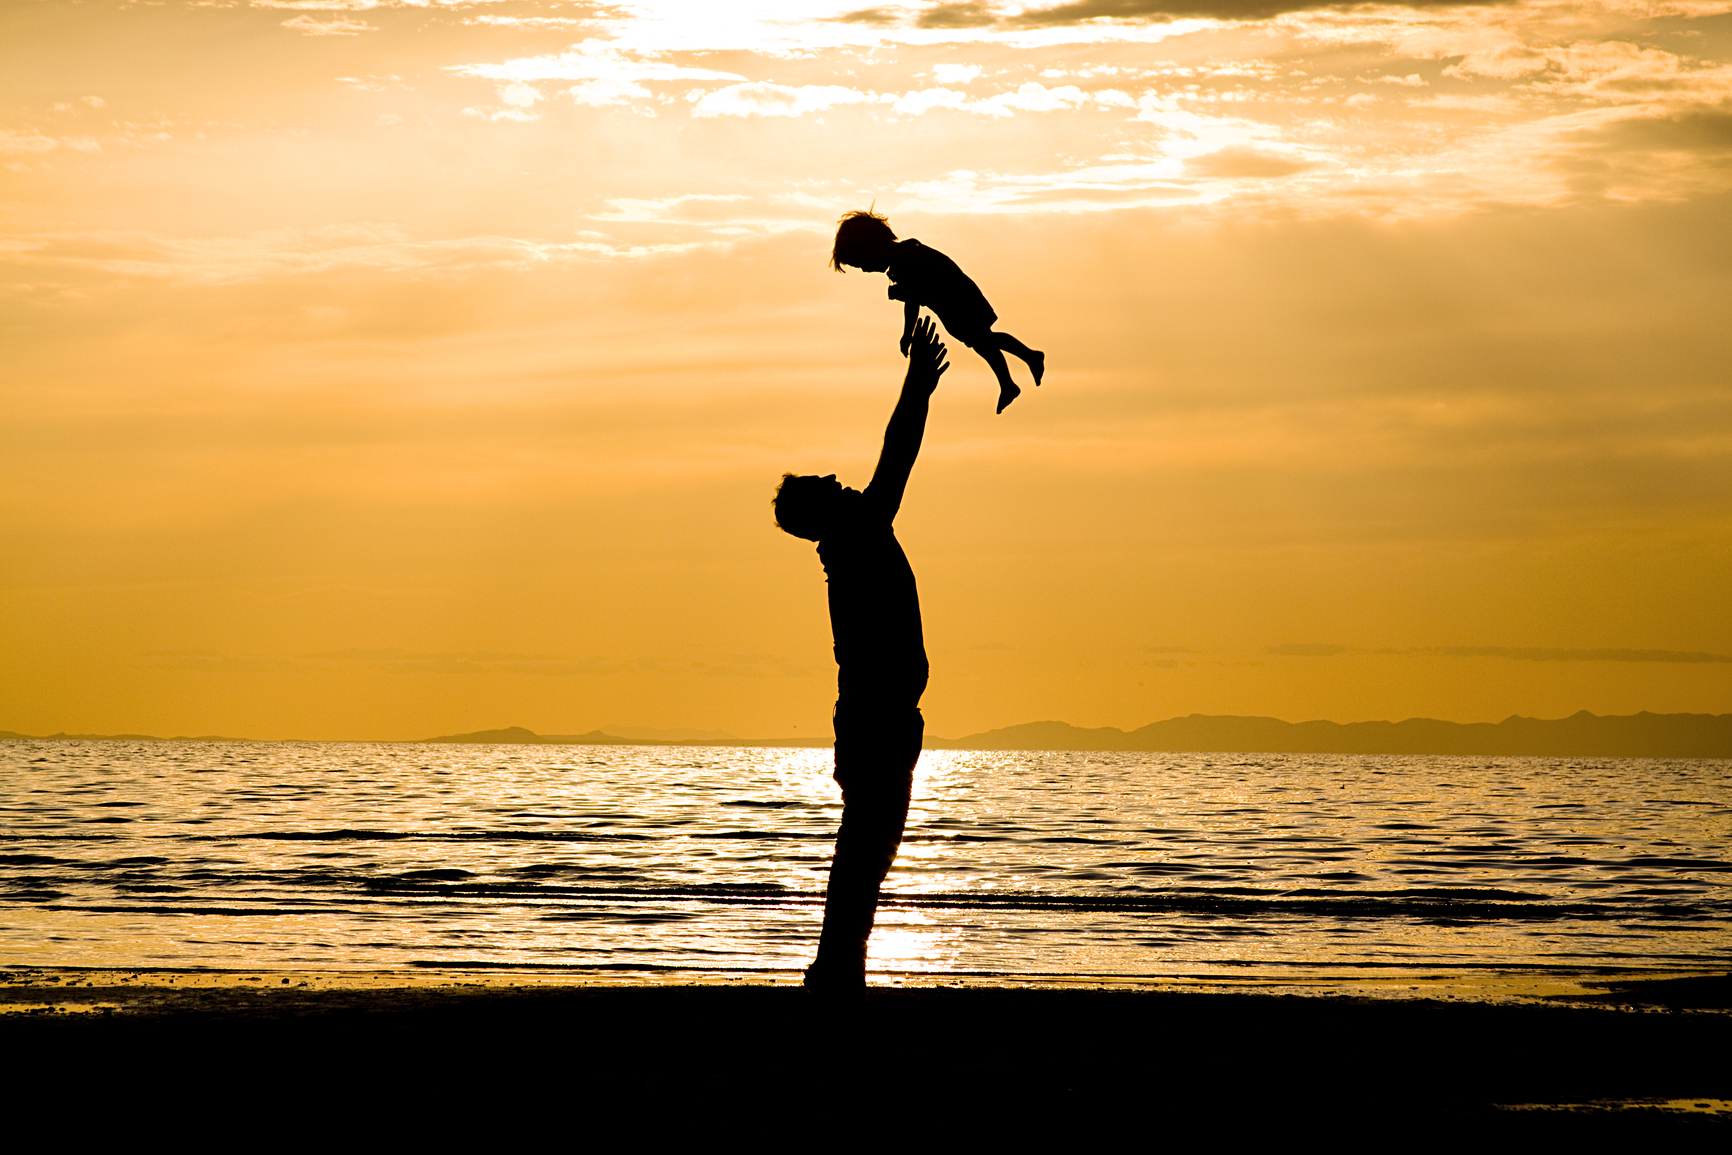 apa család nevelés szocializáció gyerek gyermek pszichológia környezet szülő apasprint